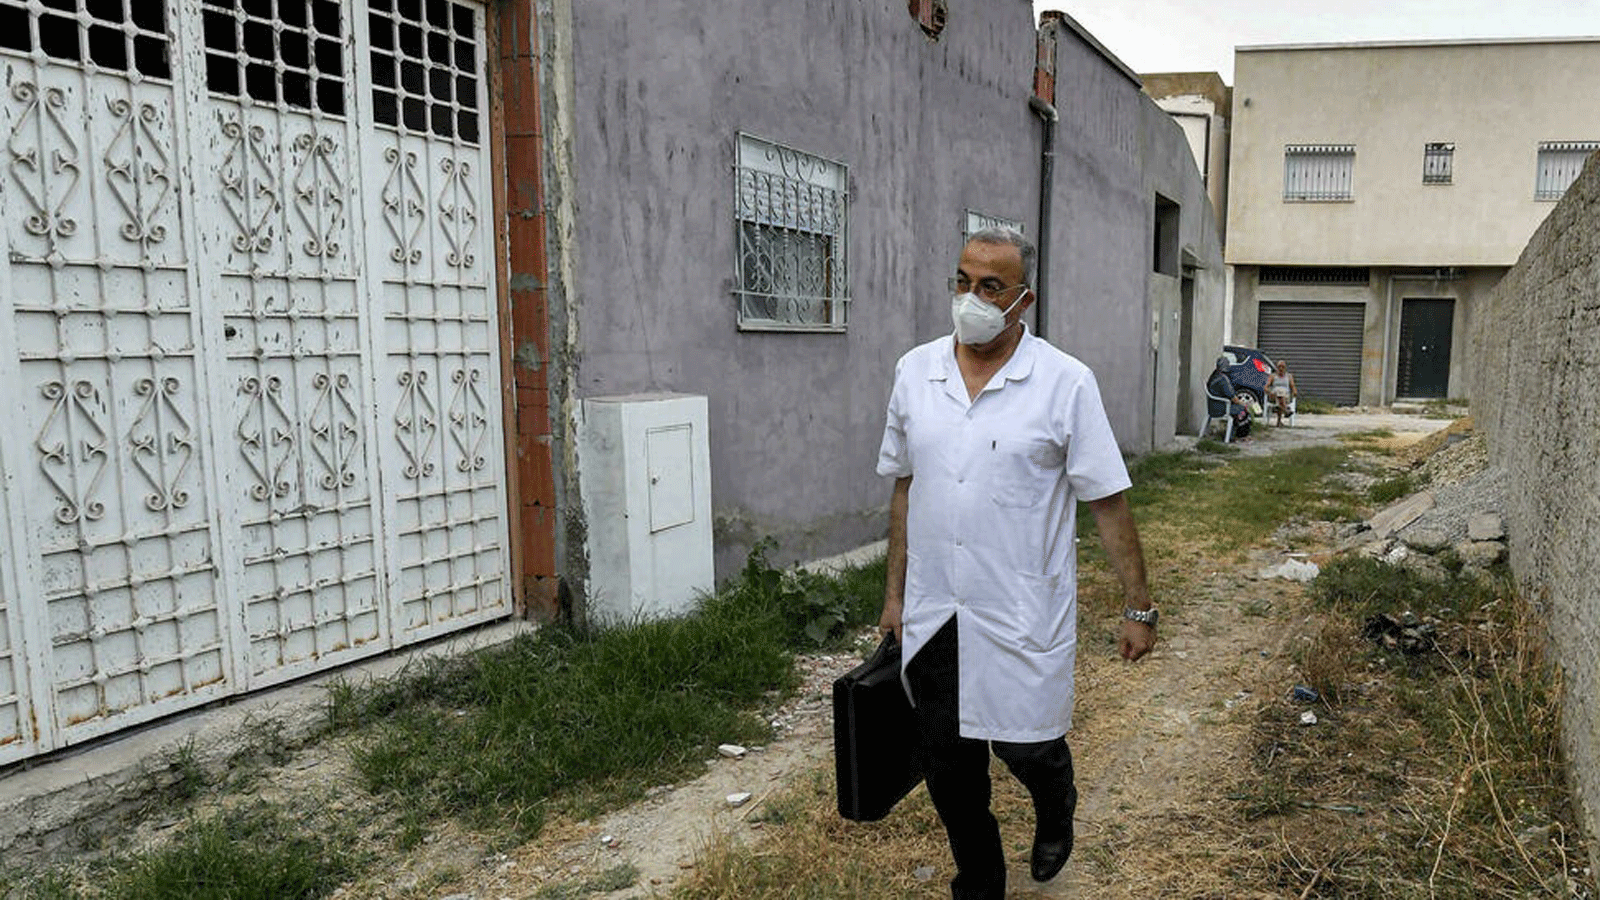 الطبيب التونسي هشام الوادي في أحد شوارع بلدة بو محيل في طريقه لزيارة مريض يعاني من Covid-19